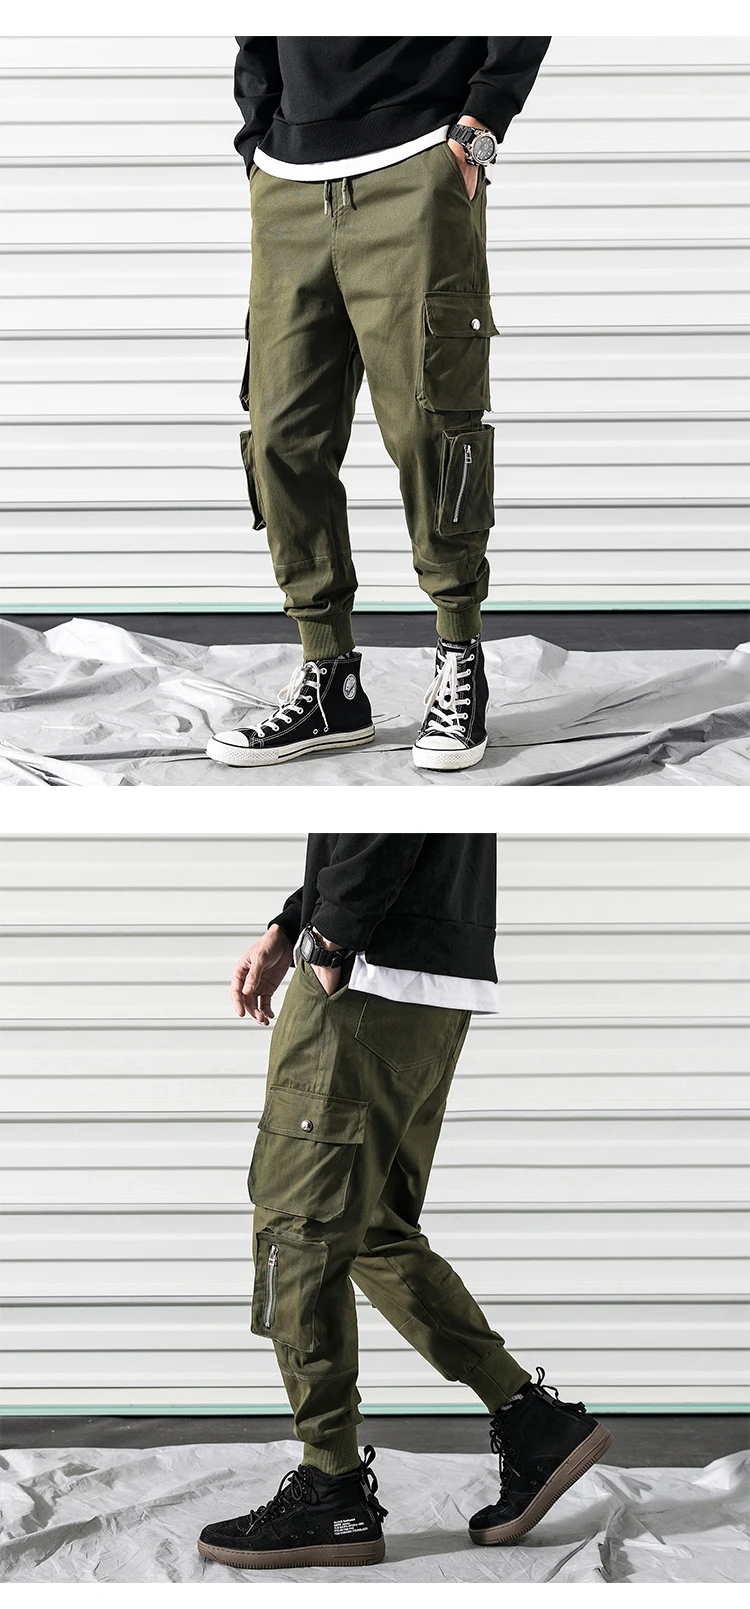 2019 новые модные популярные мужские уличные хип-хоп шаровары мужские эластичные талии Тактические Брюки повседневные мужские узкие брюки